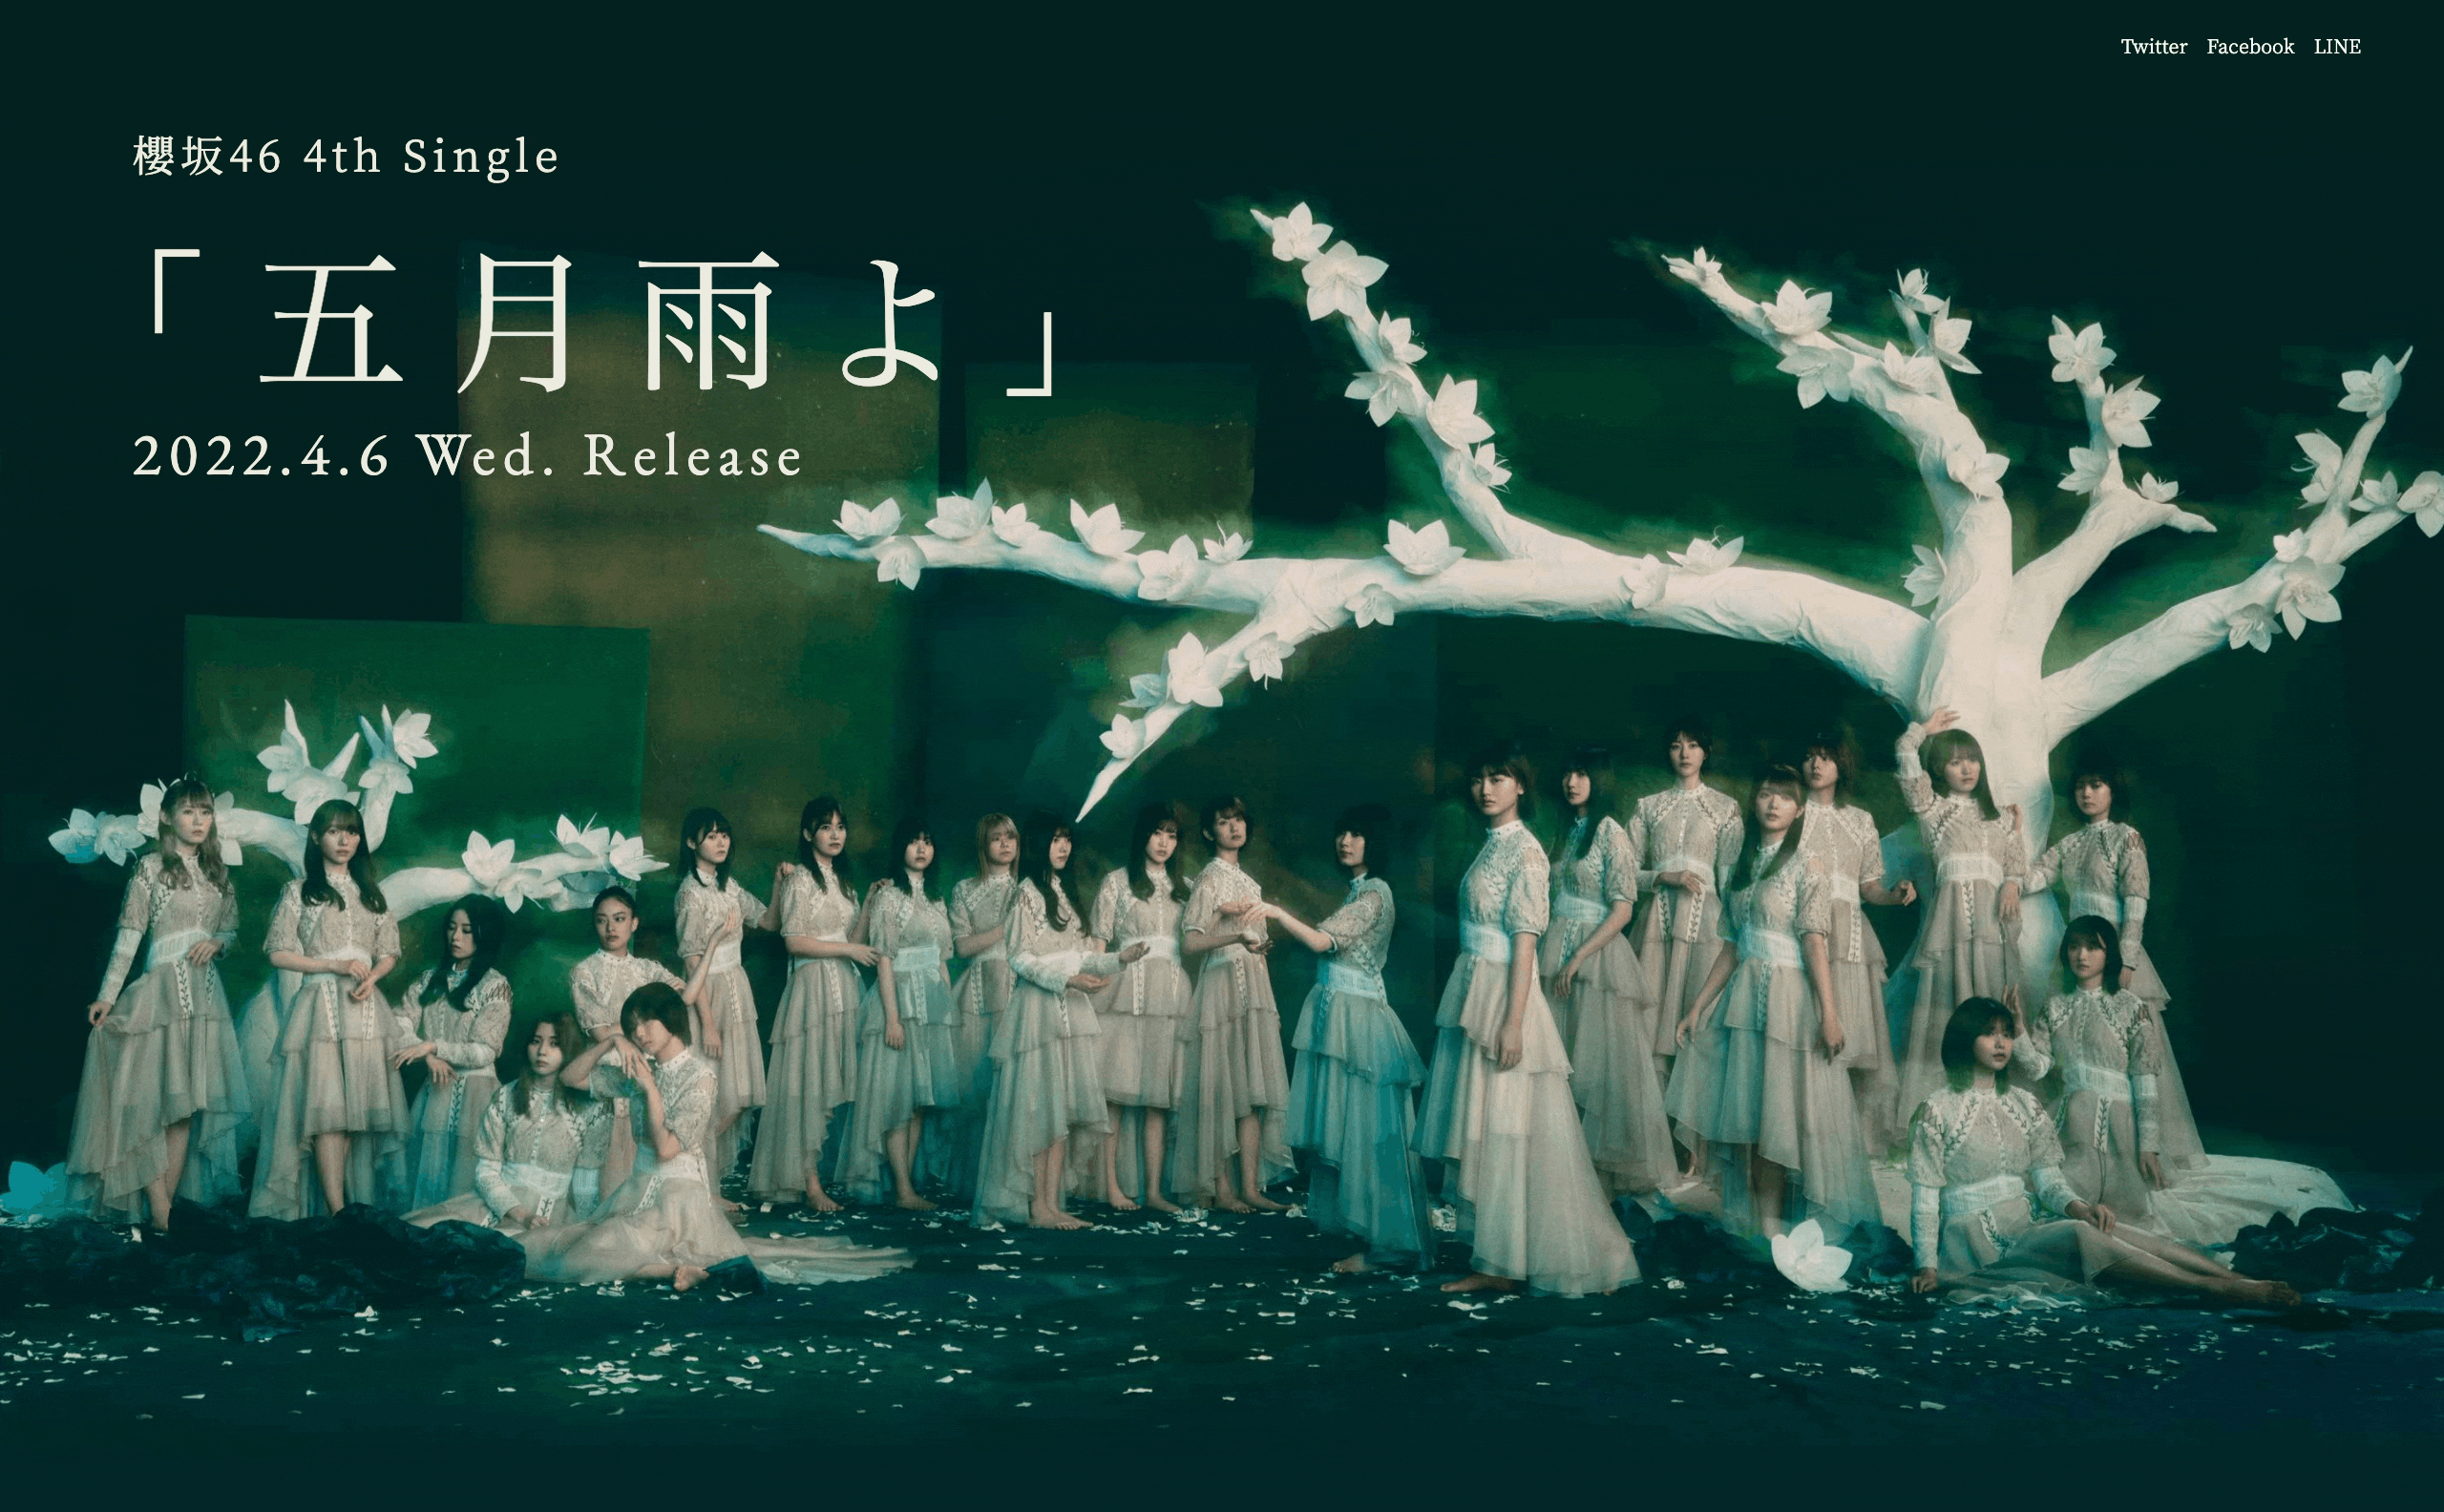 櫻坂46 4th Single「五月雨よ」 | MUSIC WEB CLIPS - バンド 